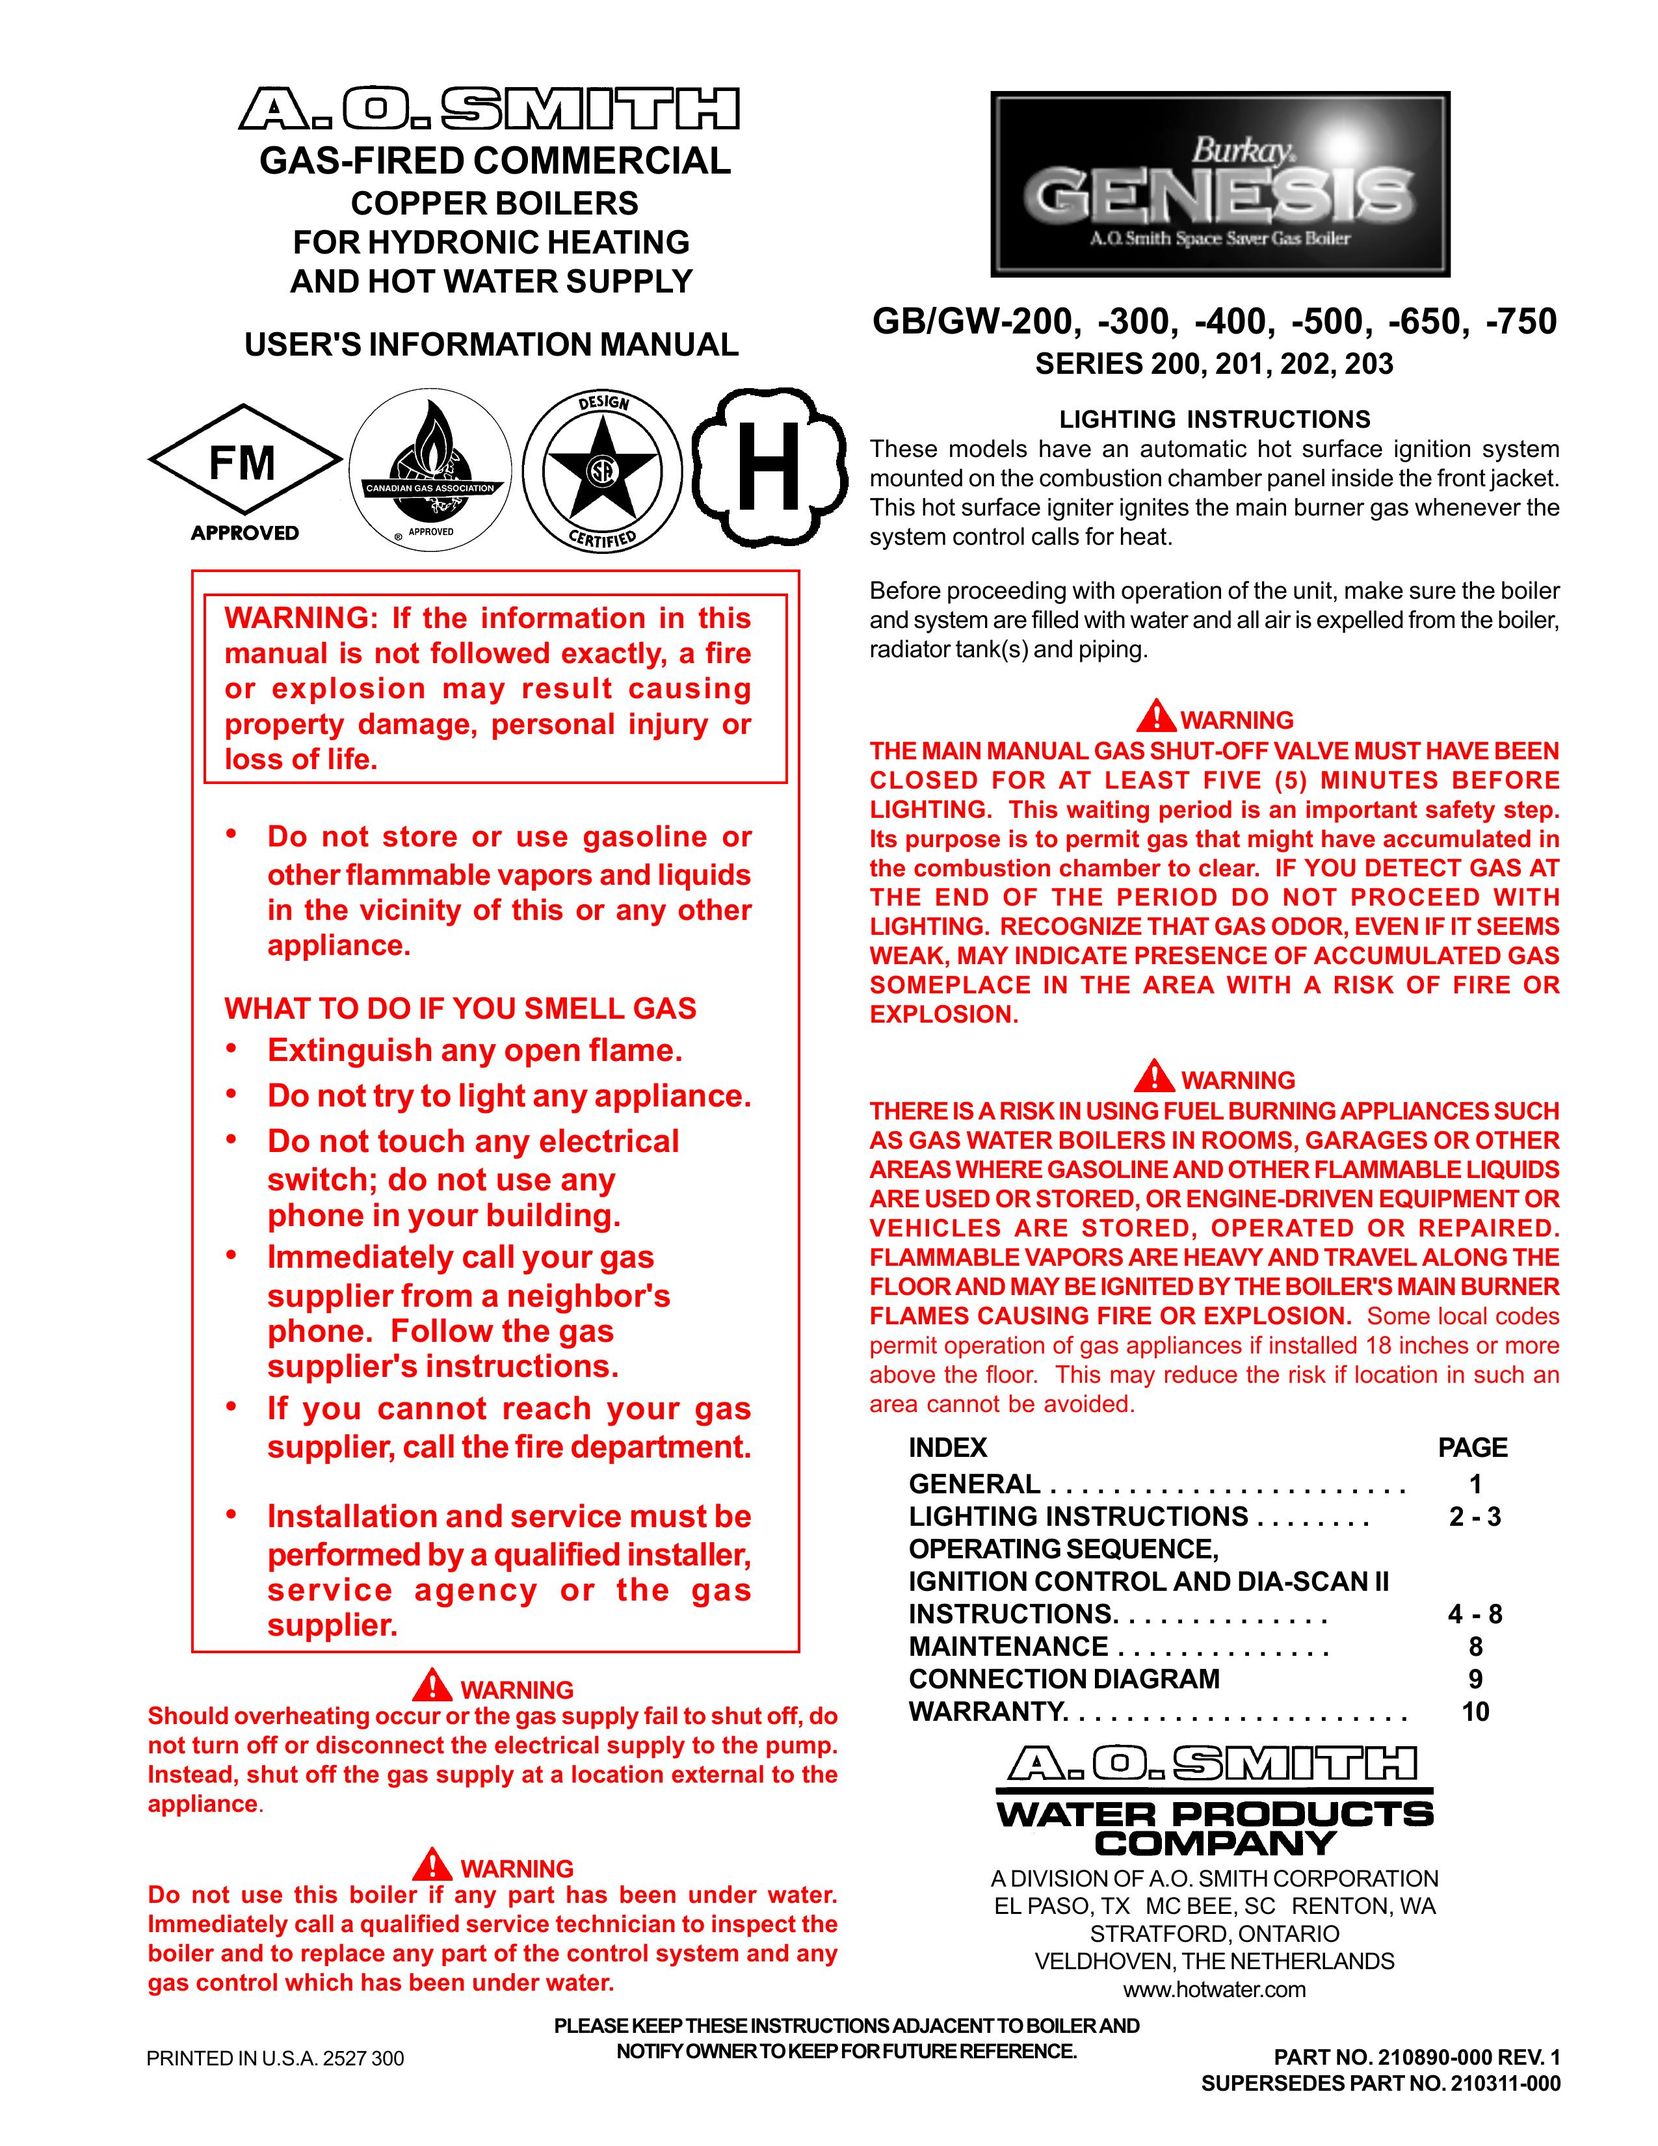 A.O. Smith GB/GW-500 Boiler User Manual